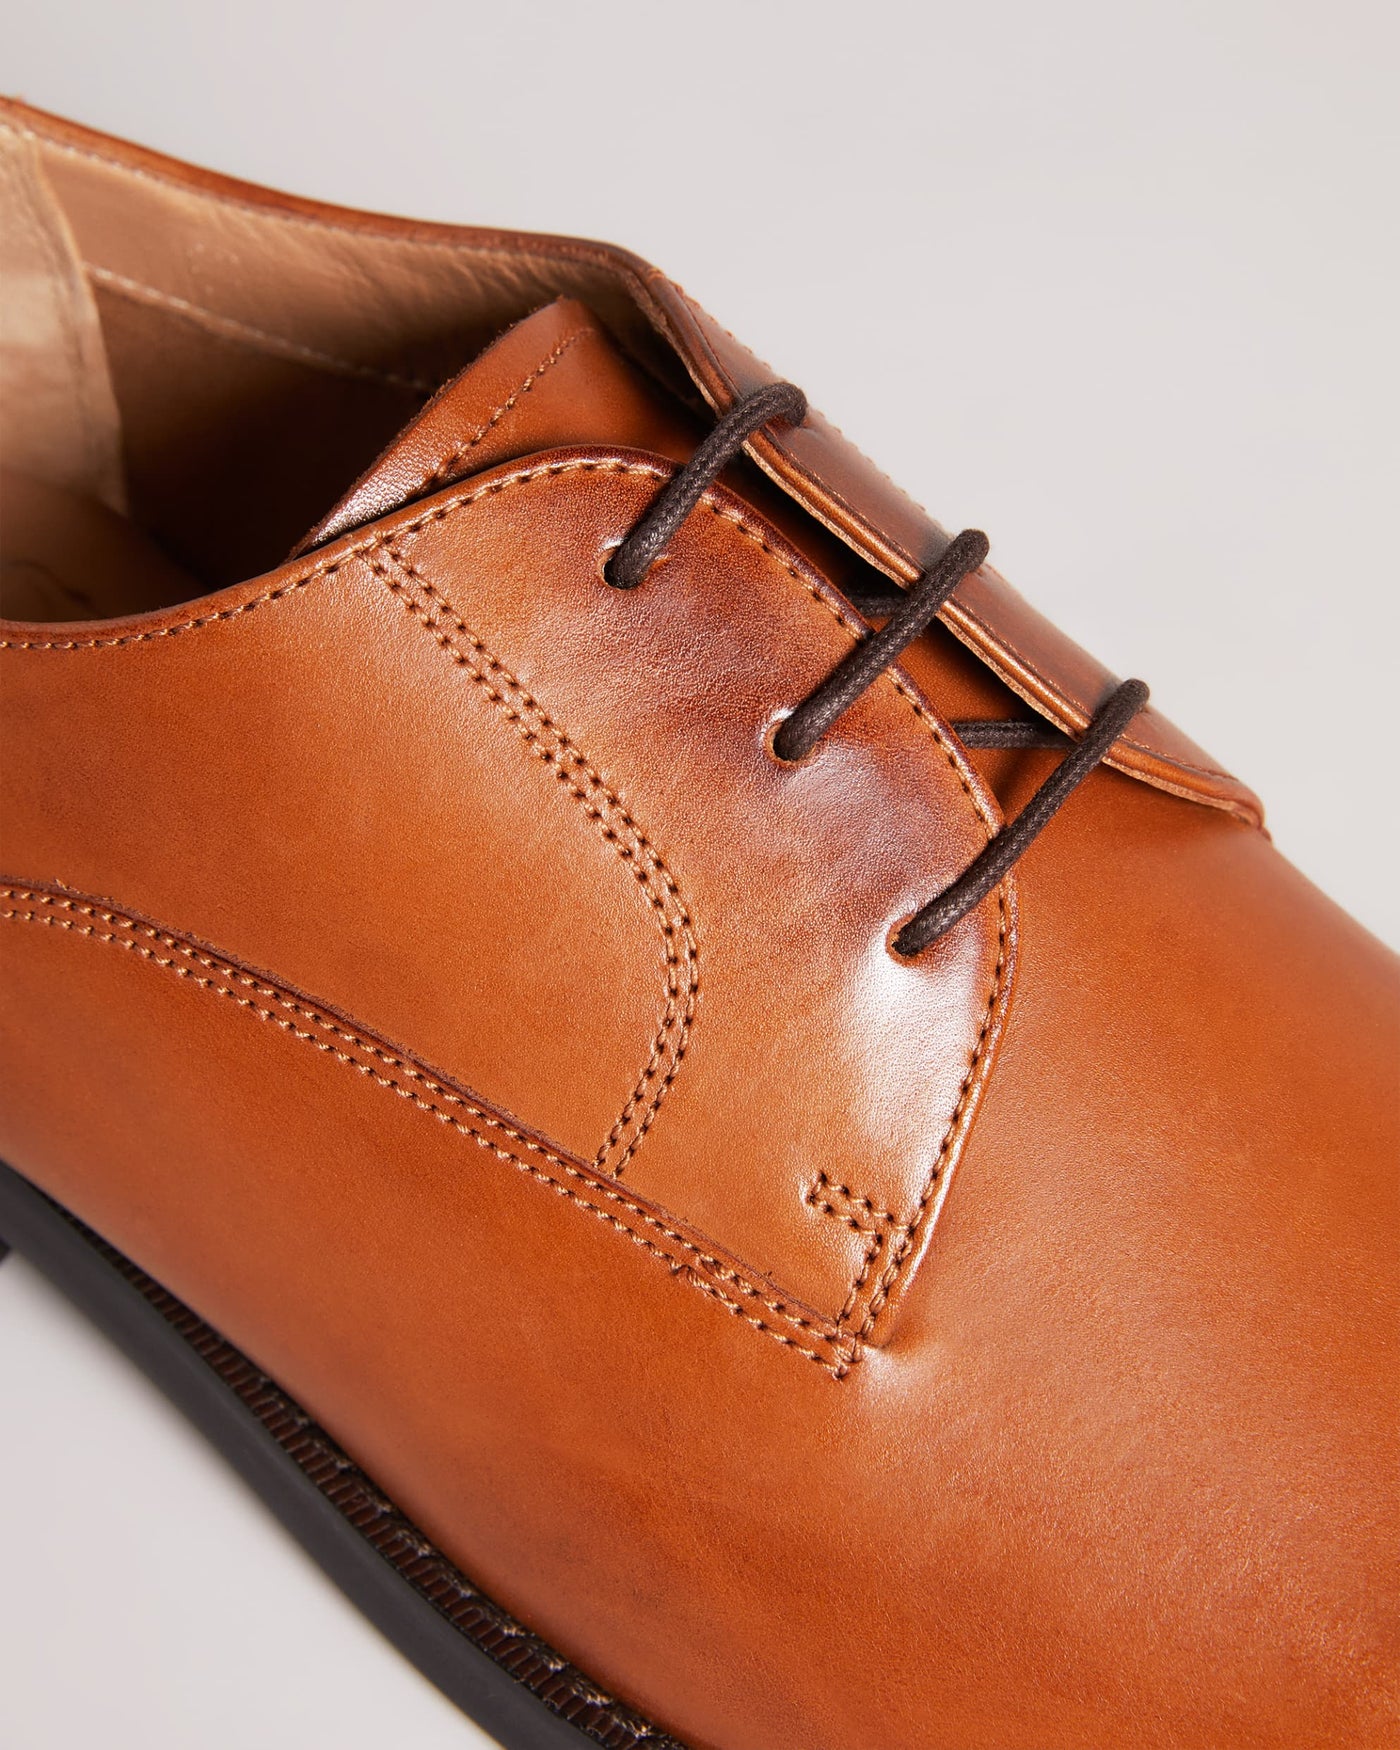 Ted Baker Kampten Formal Leather Derby Shoes | Tan